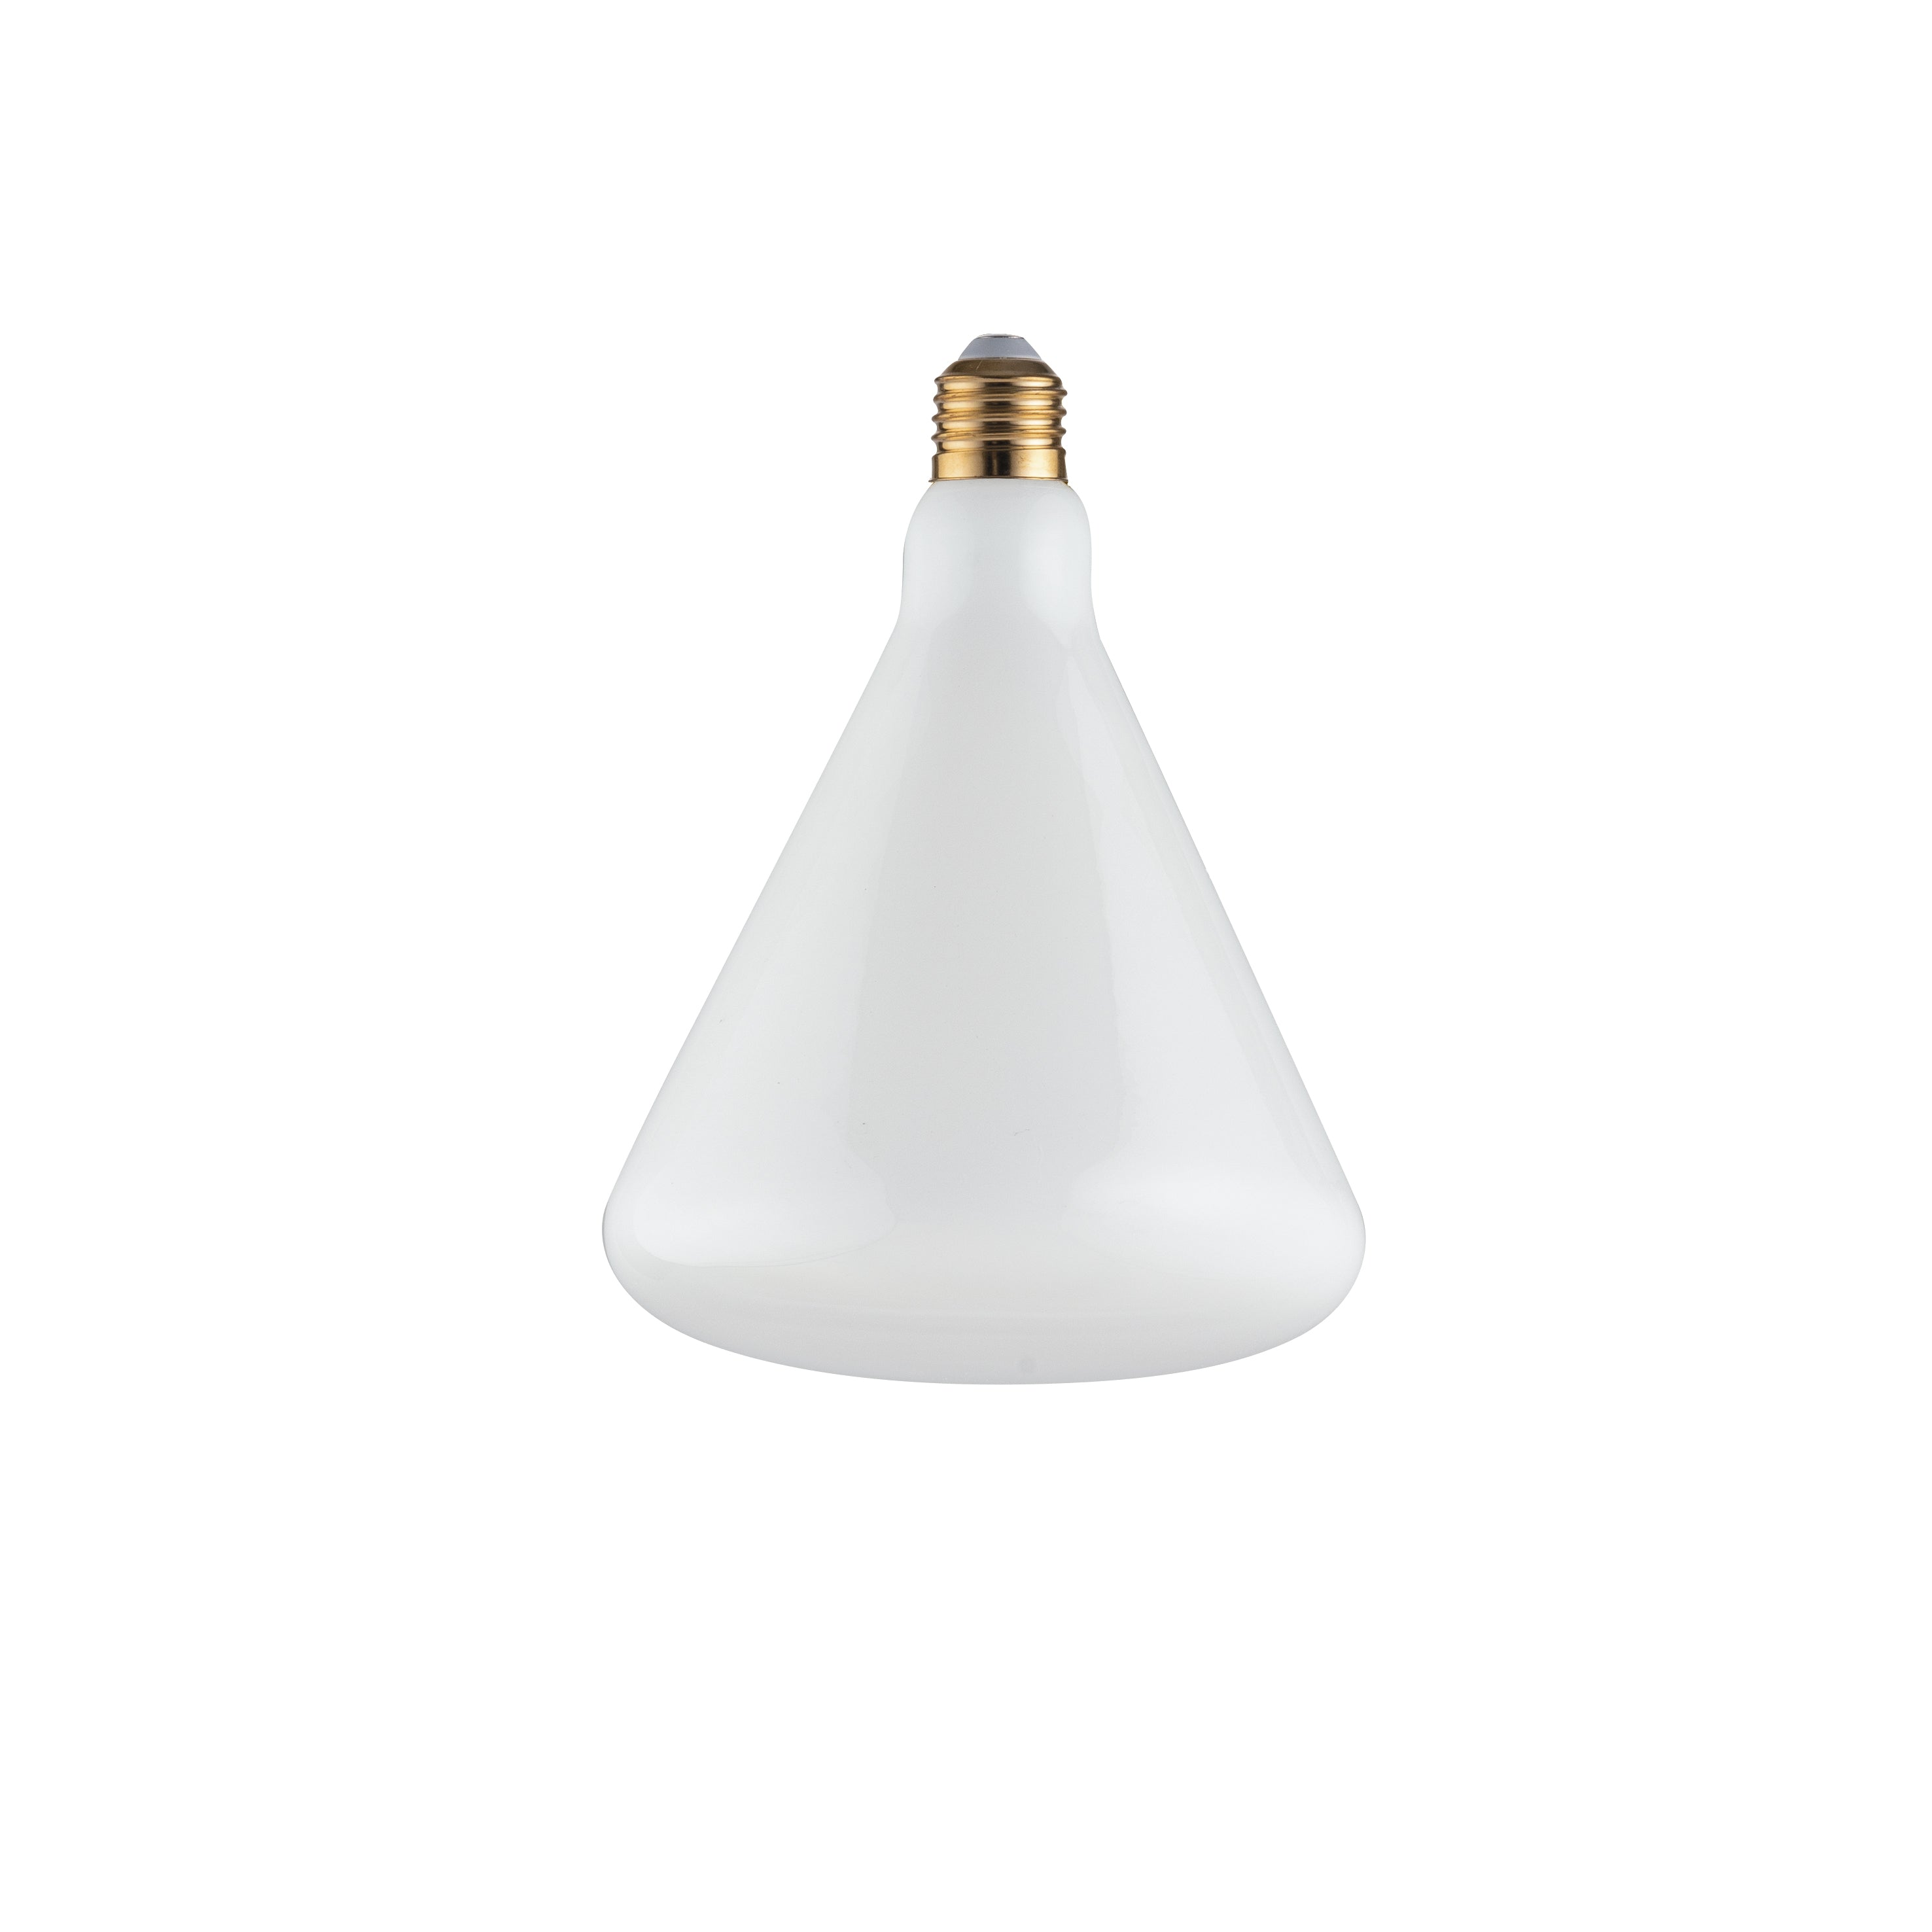 Bombilla decorativa LED LUXA 8W casquillo E27 luz natural 21,5x16 cm.